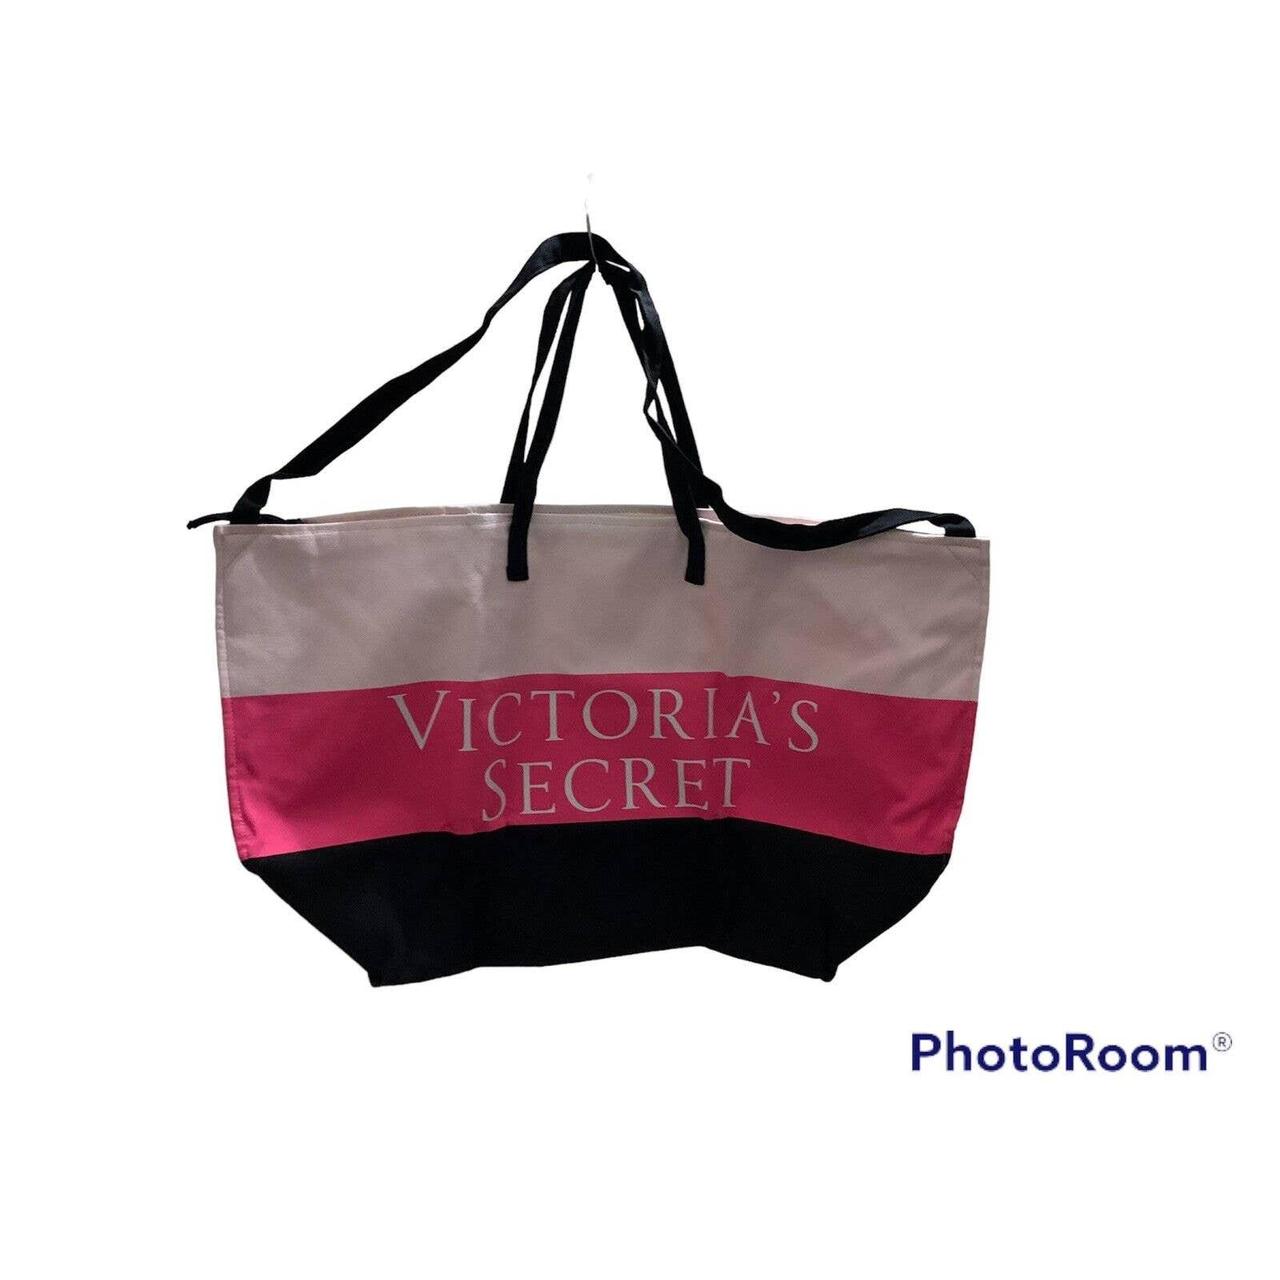 Victoria's Secret Signature Tote Bags